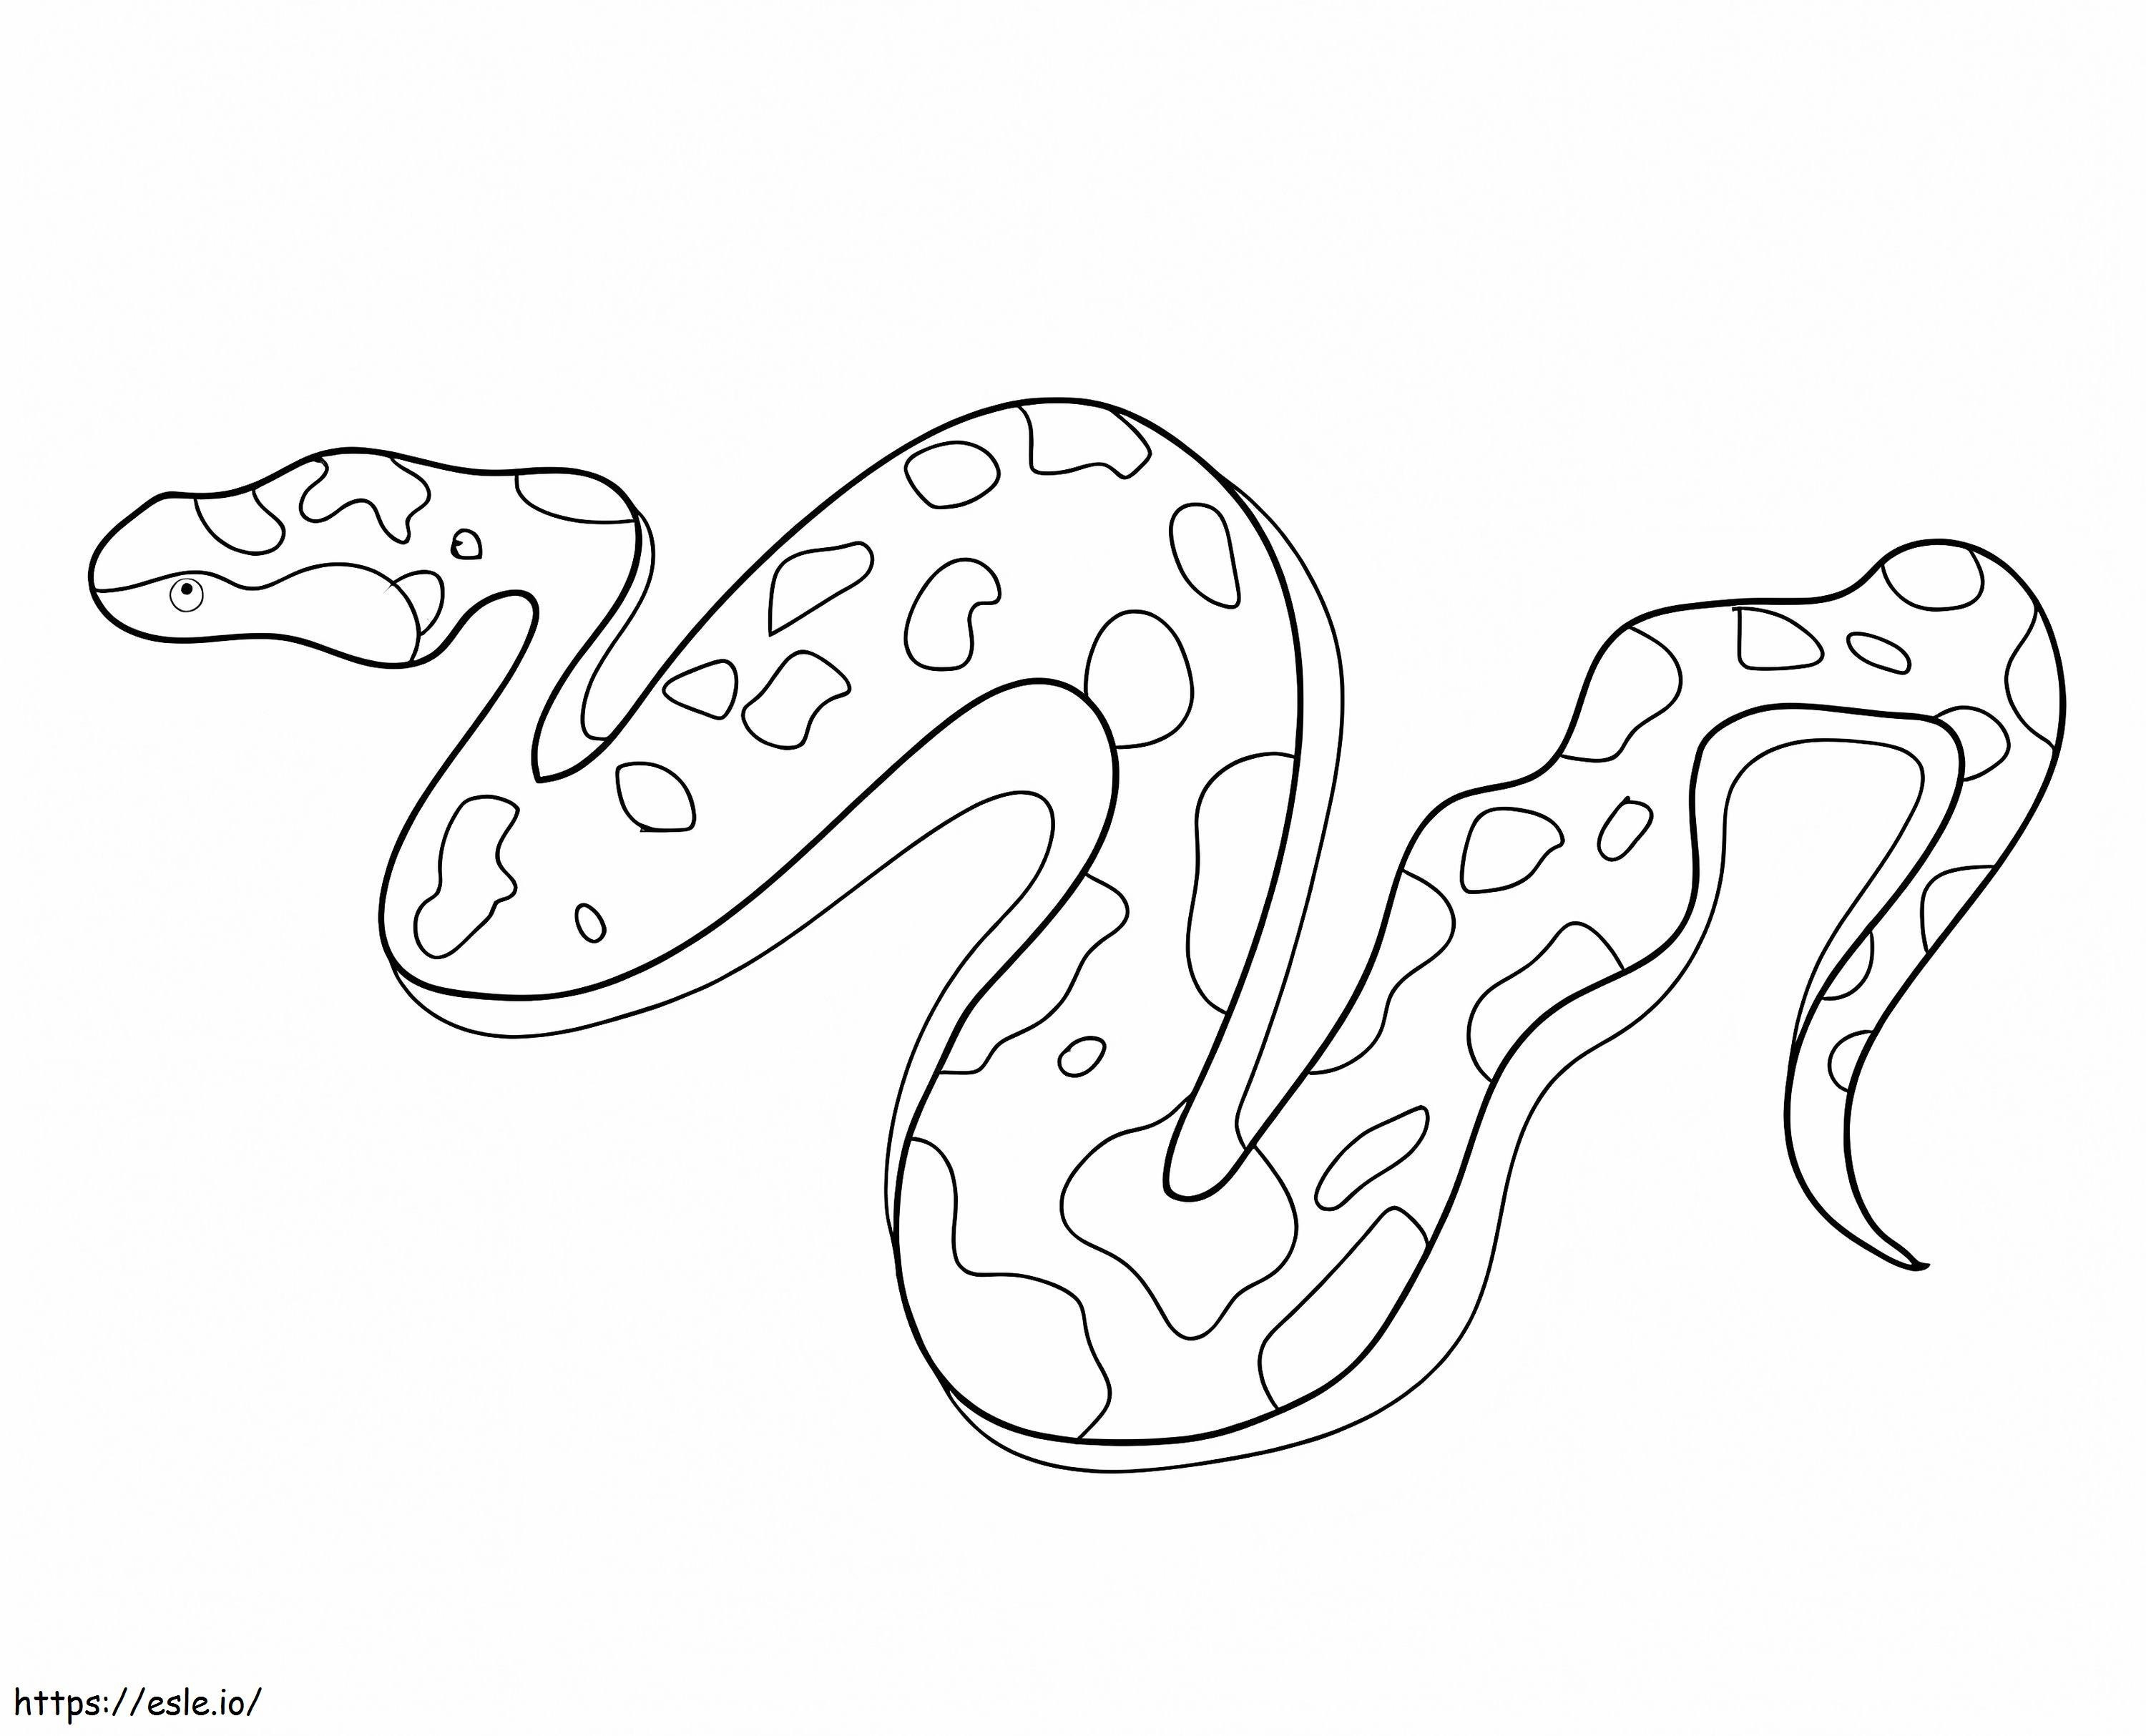 Coloriage Un serpent à imprimer dessin